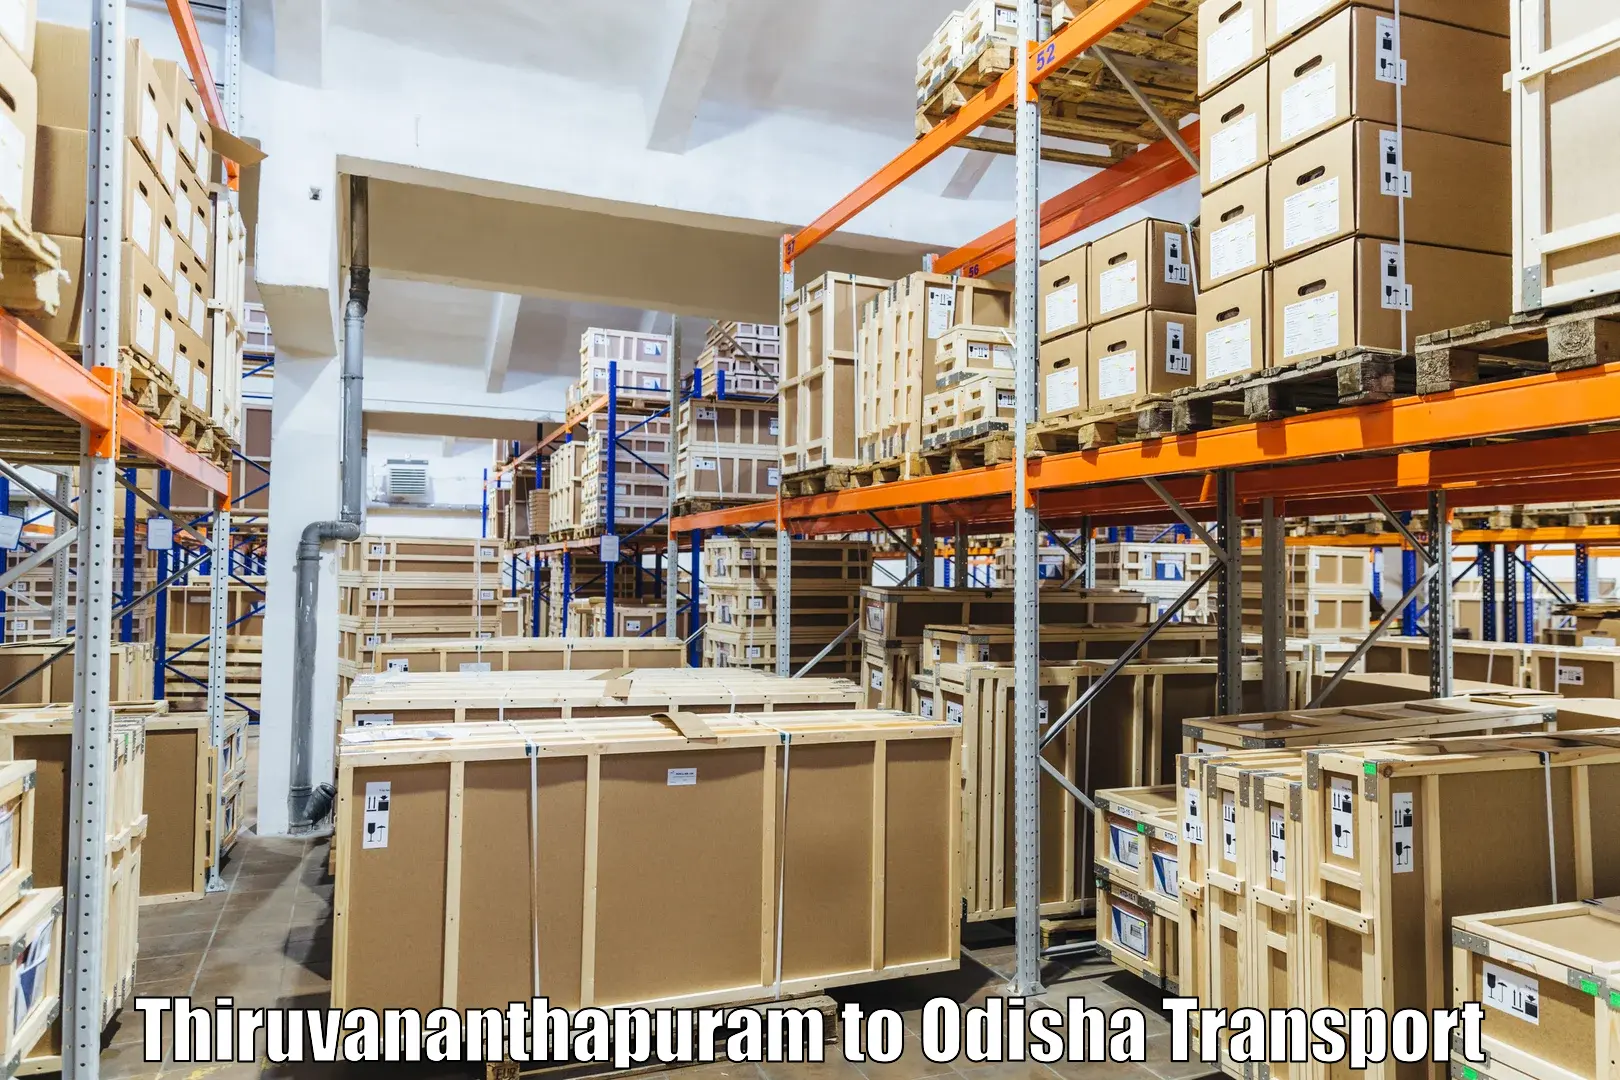 Truck transport companies in India in Thiruvananthapuram to Mohana